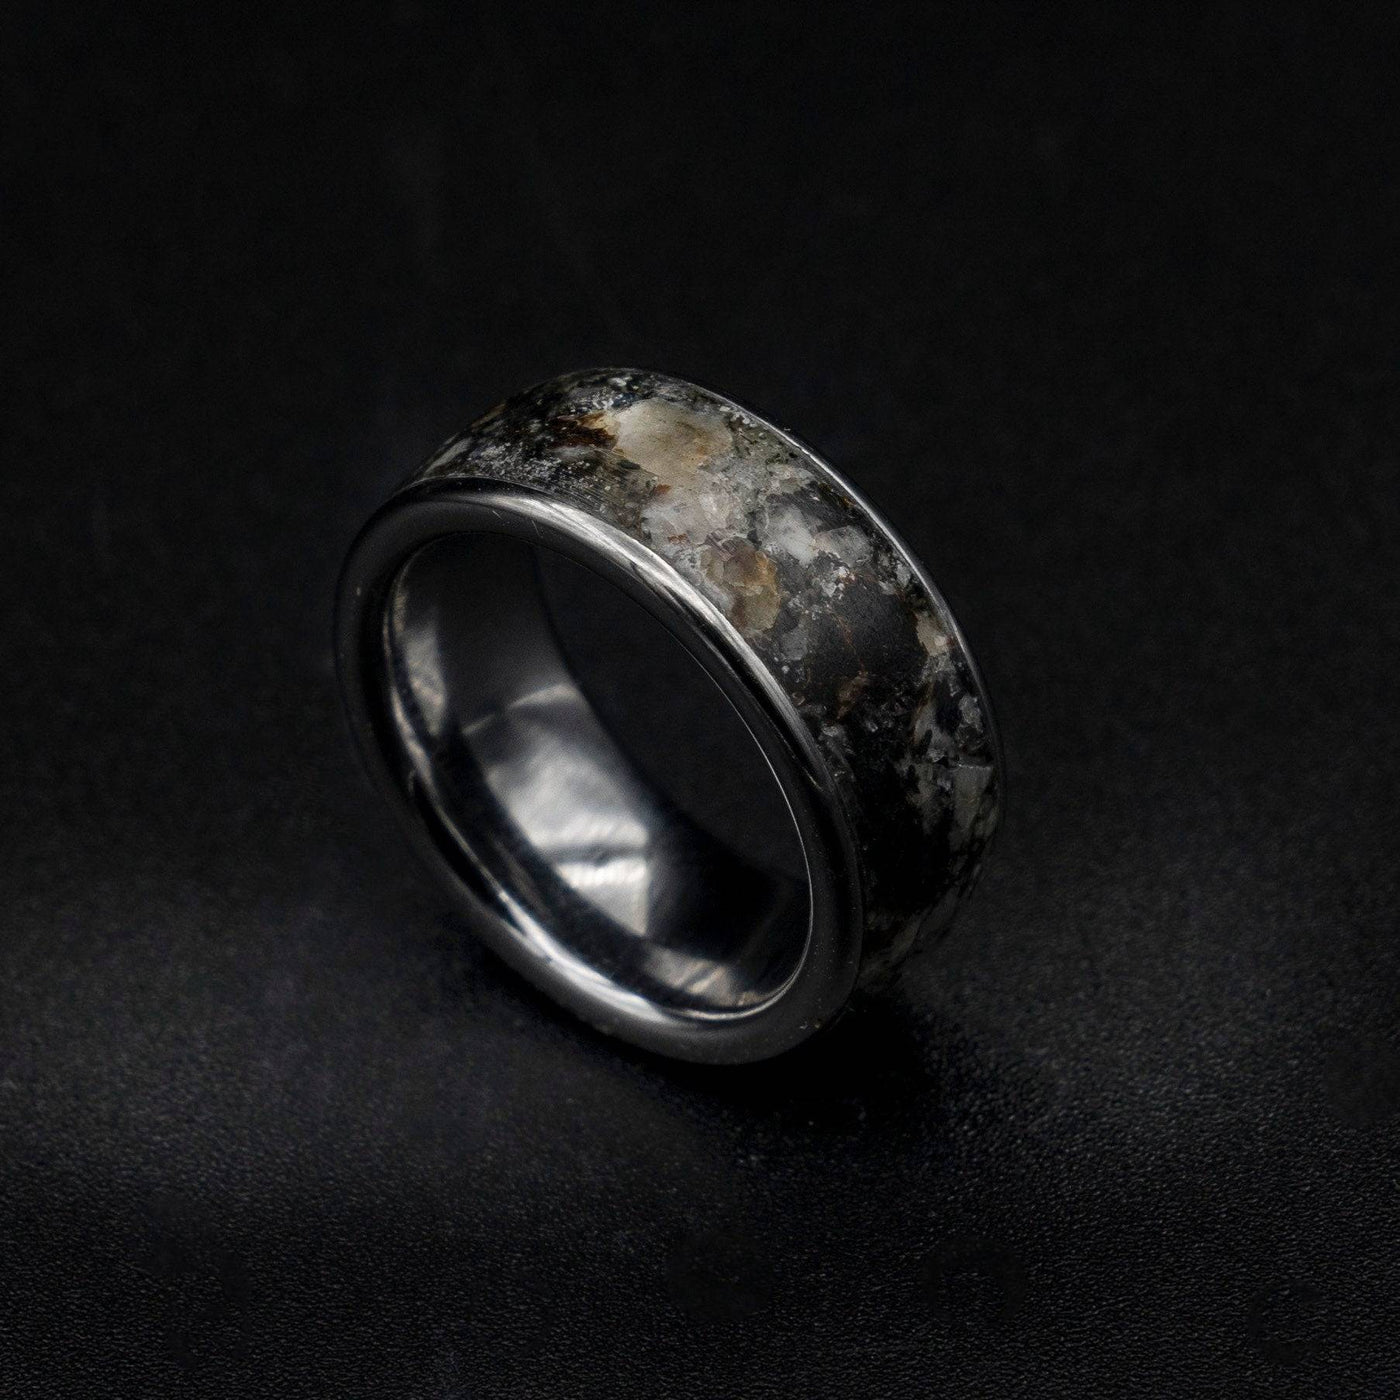 preseli bluestone ring, earth stone ring, Healing crystal ring, healing crystals and stones, jewelry, necklace, pendants.